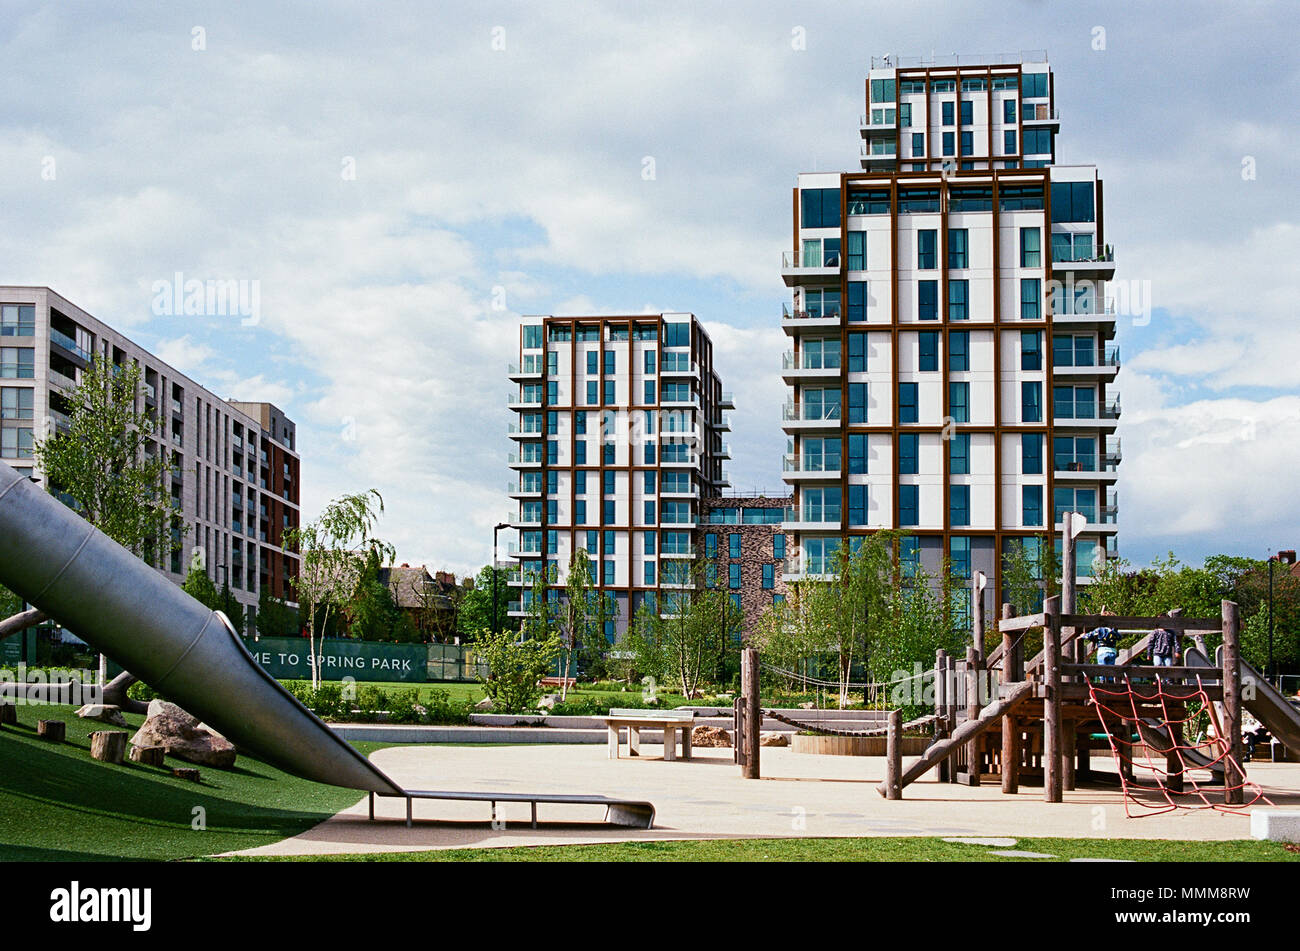 Nuovi appartamenti e area giochi per bambini presso il recentemente costruito il parco di primavera, Woodberry Down, North London REGNO UNITO Foto Stock